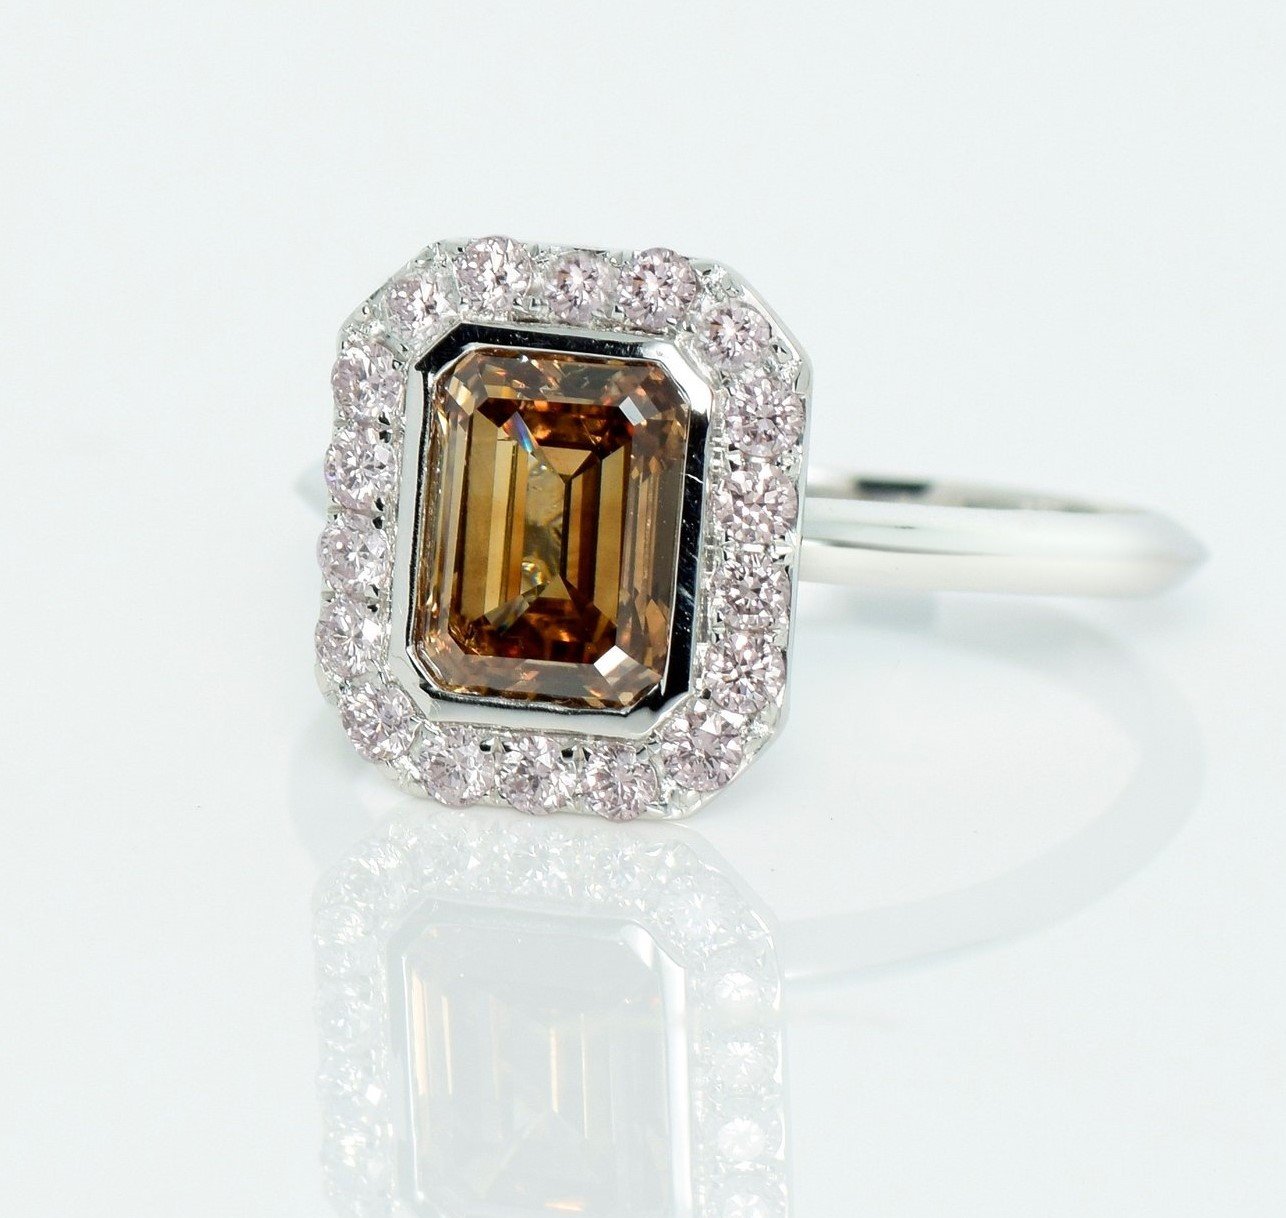 .. - Luxusní prsten s Fancy Intense Orange Brown diamantem 1,52 ct, Pink diamanty 0,43 ct, bílé zlato 750/1000, značeno platnou puncovní značkou "kohout", hrubá hmotnost 2,56 g